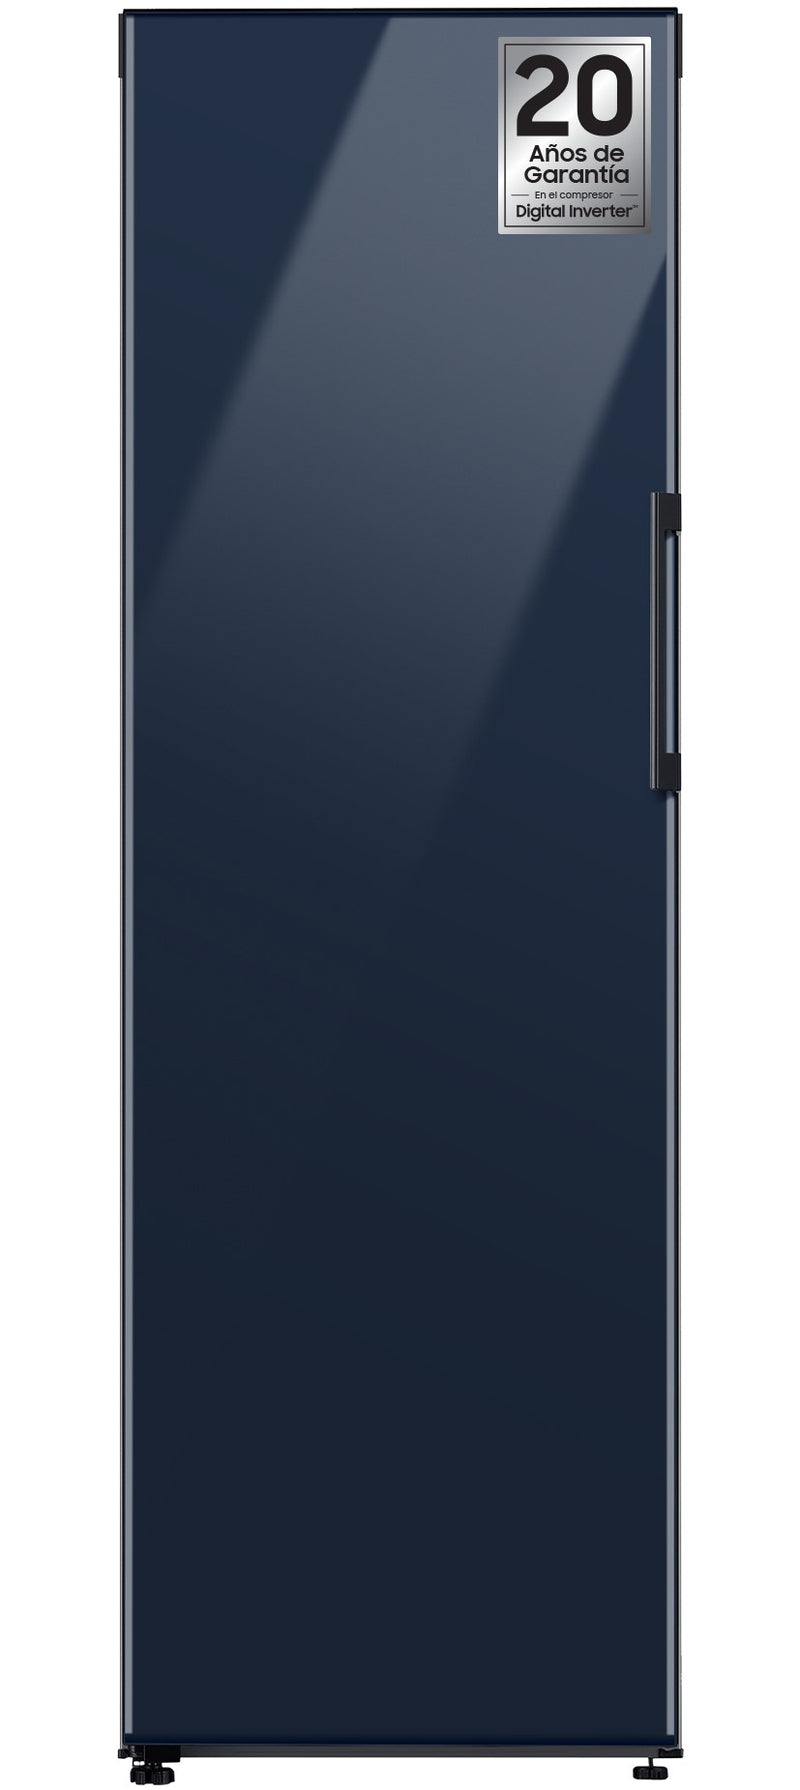 Samsung RZ32A748541 Independente 323 l F Azul marinho